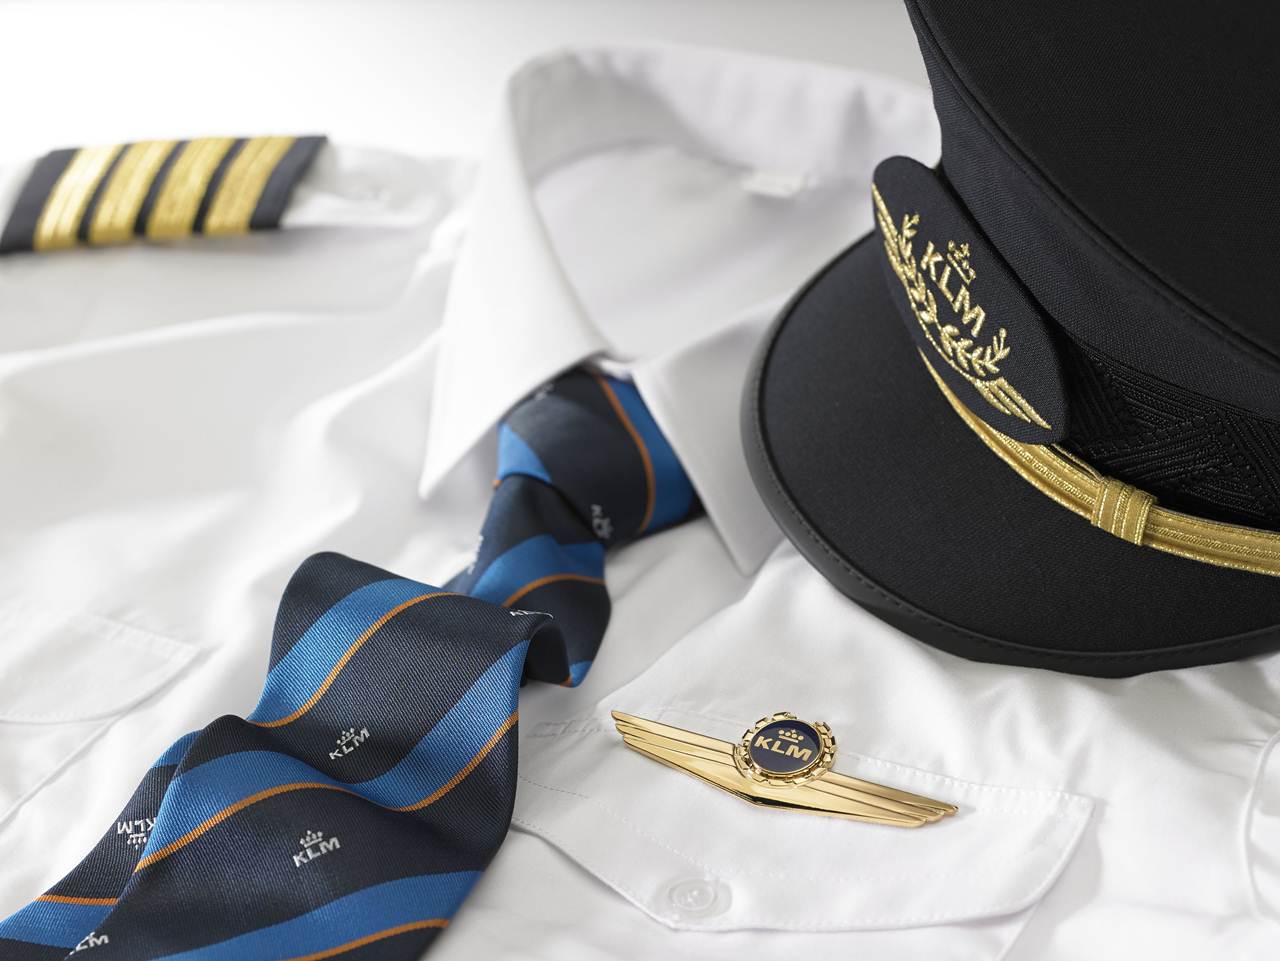 Farda de piloto ´com chapéu da companhia aérea KLM